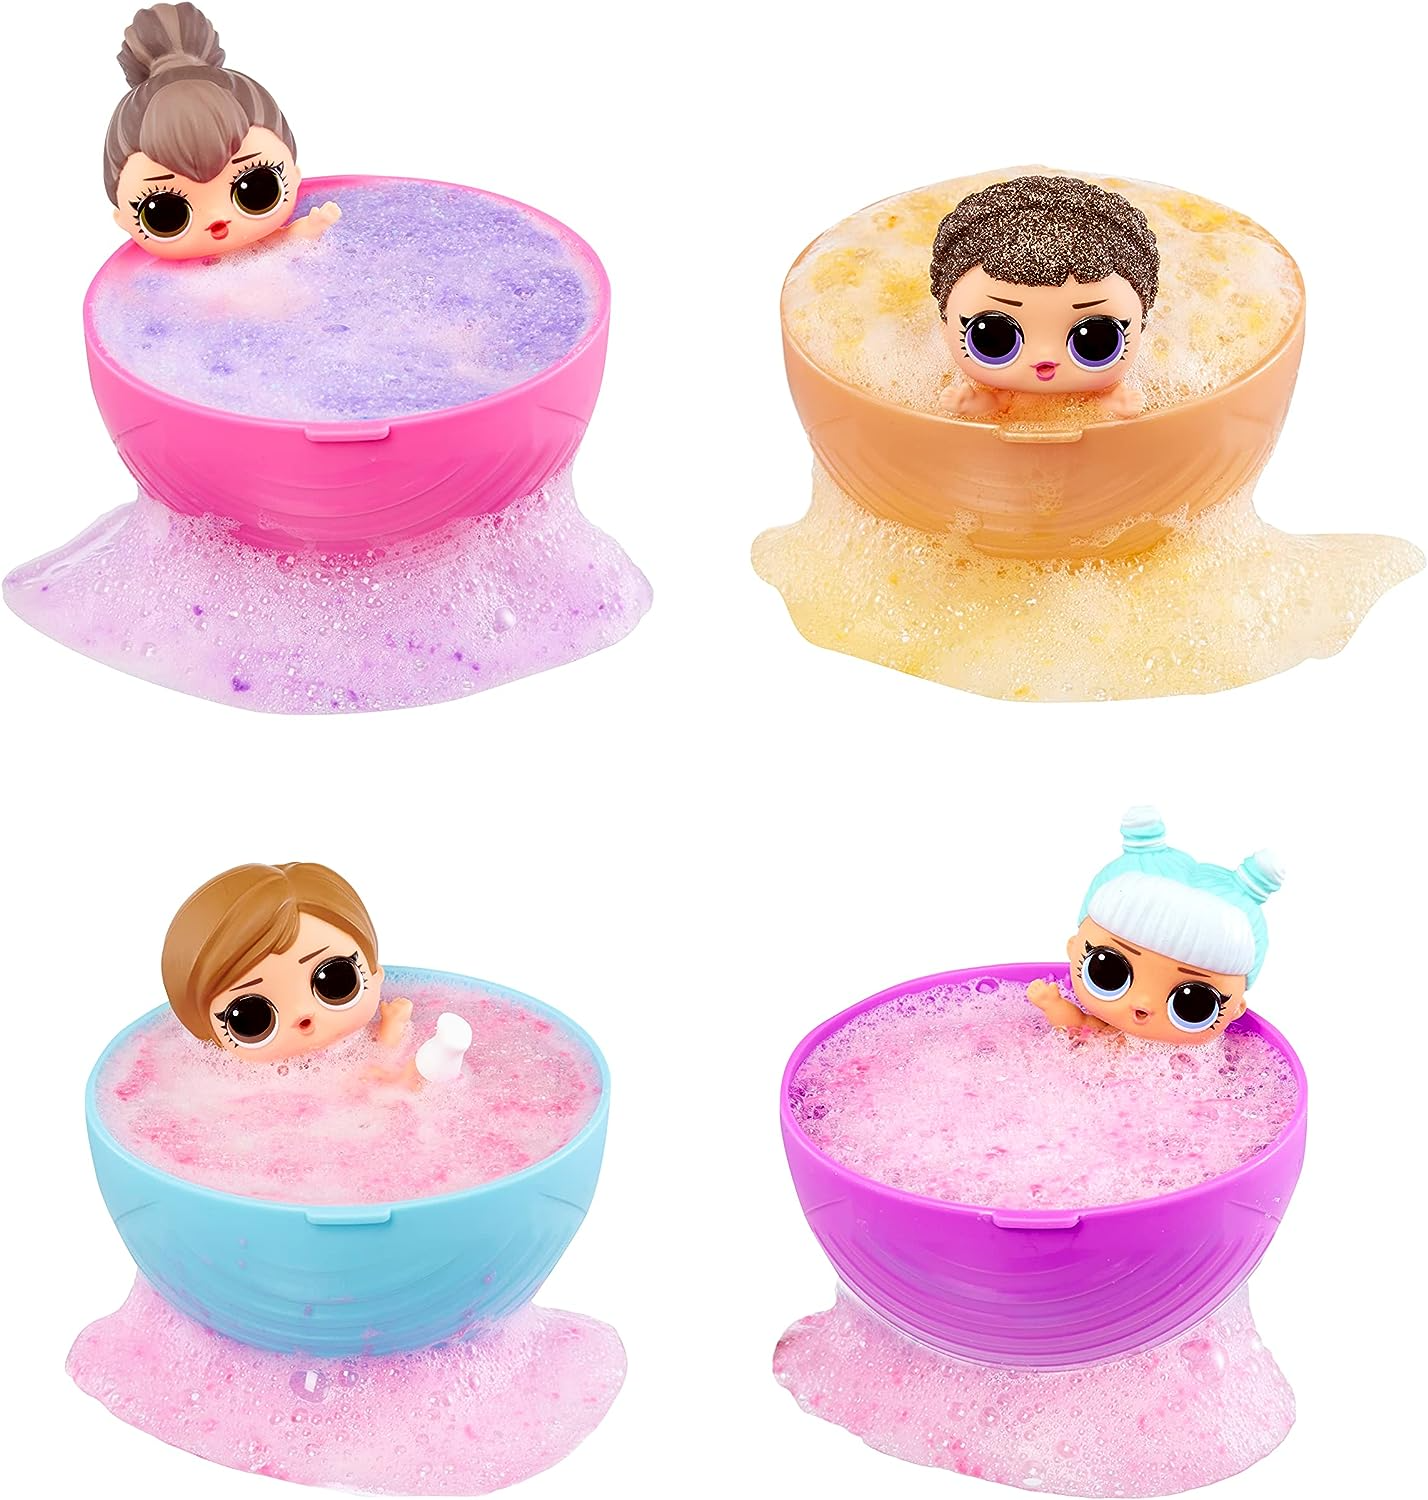 LOL Surprise Bonecas Bubble Surprise - Boneca Colecionável, Surpresas, Acessórios, Unboxing Bubble Surprise, Reação de Espuma Glitter em Água Quente - Ótimo presente para meninas de 4 anos ou mais